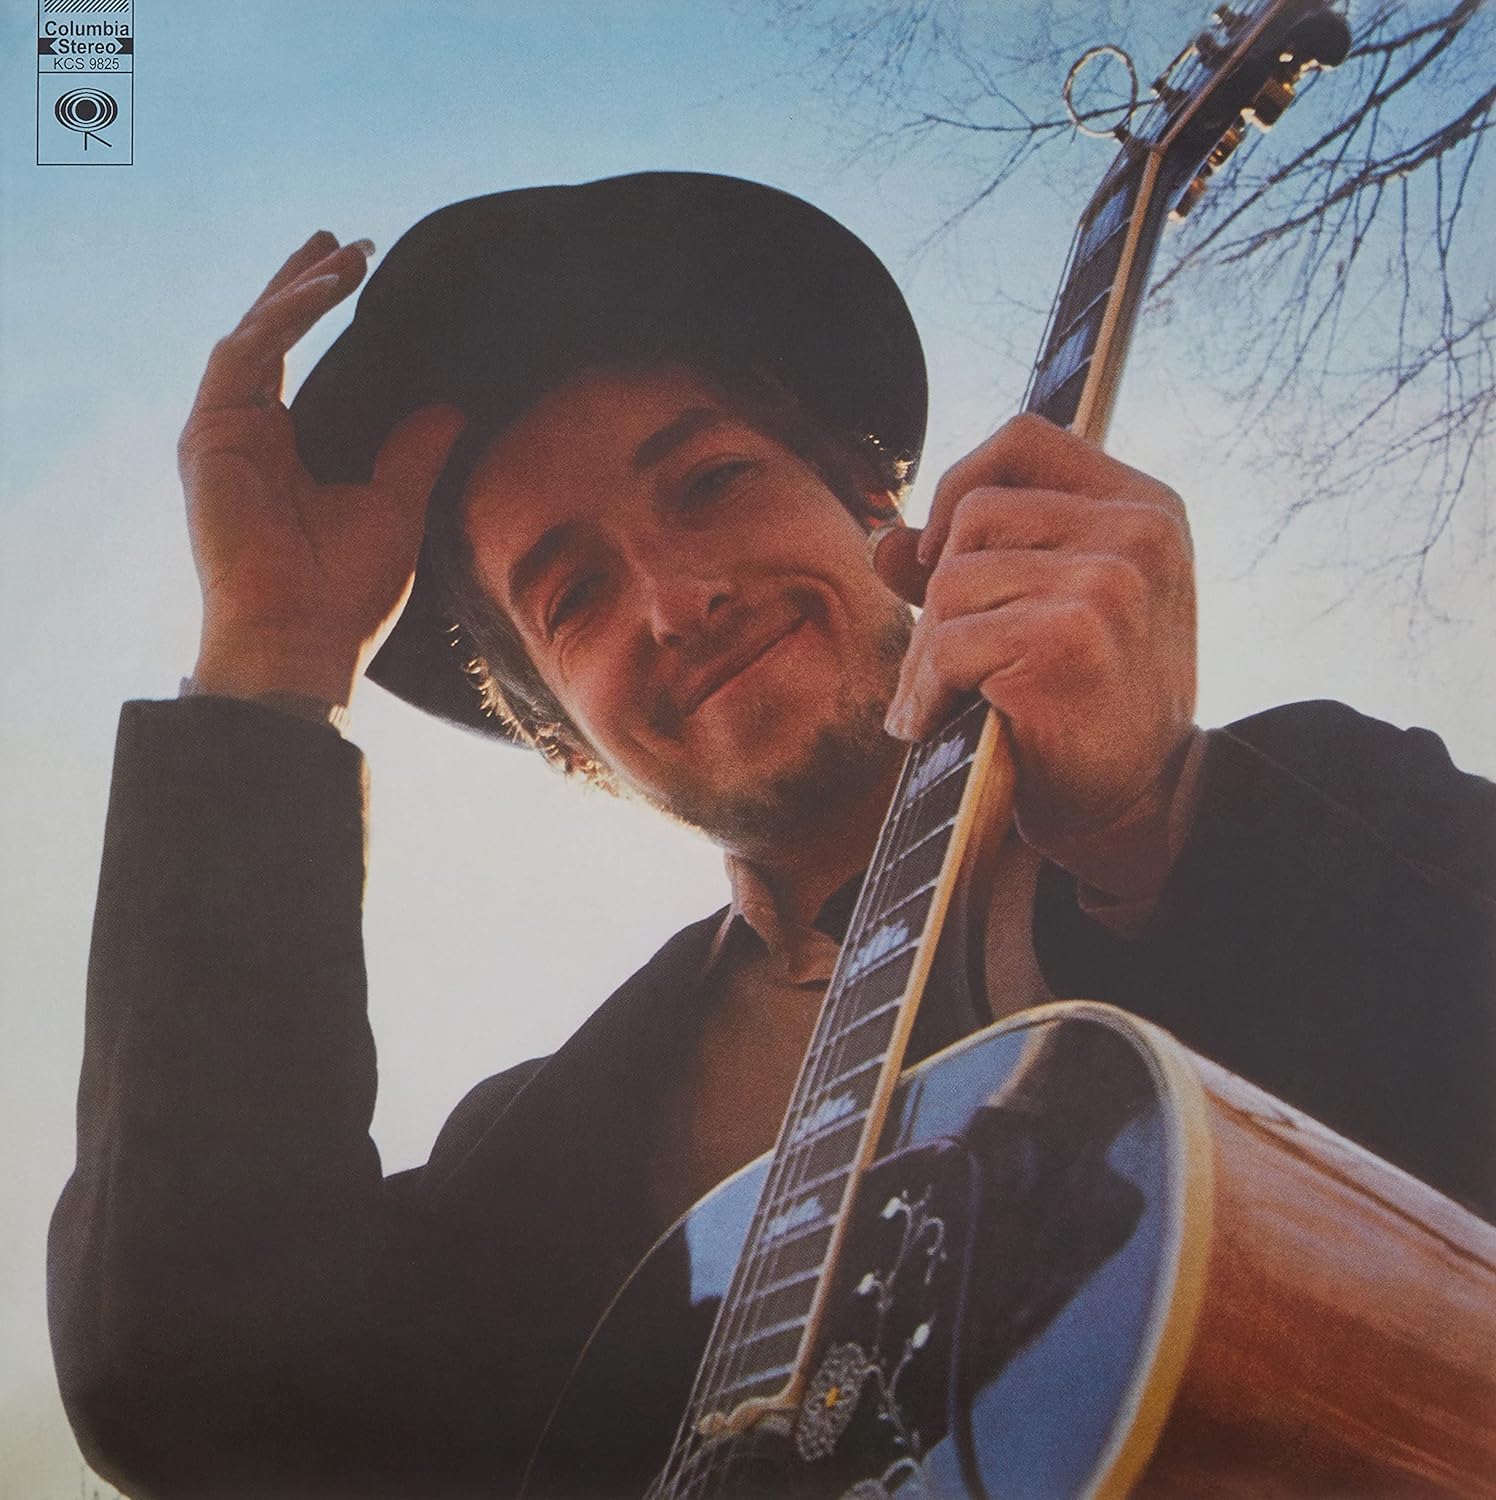 Bob Dylan Nashville Skyline - Ireland Vinyl